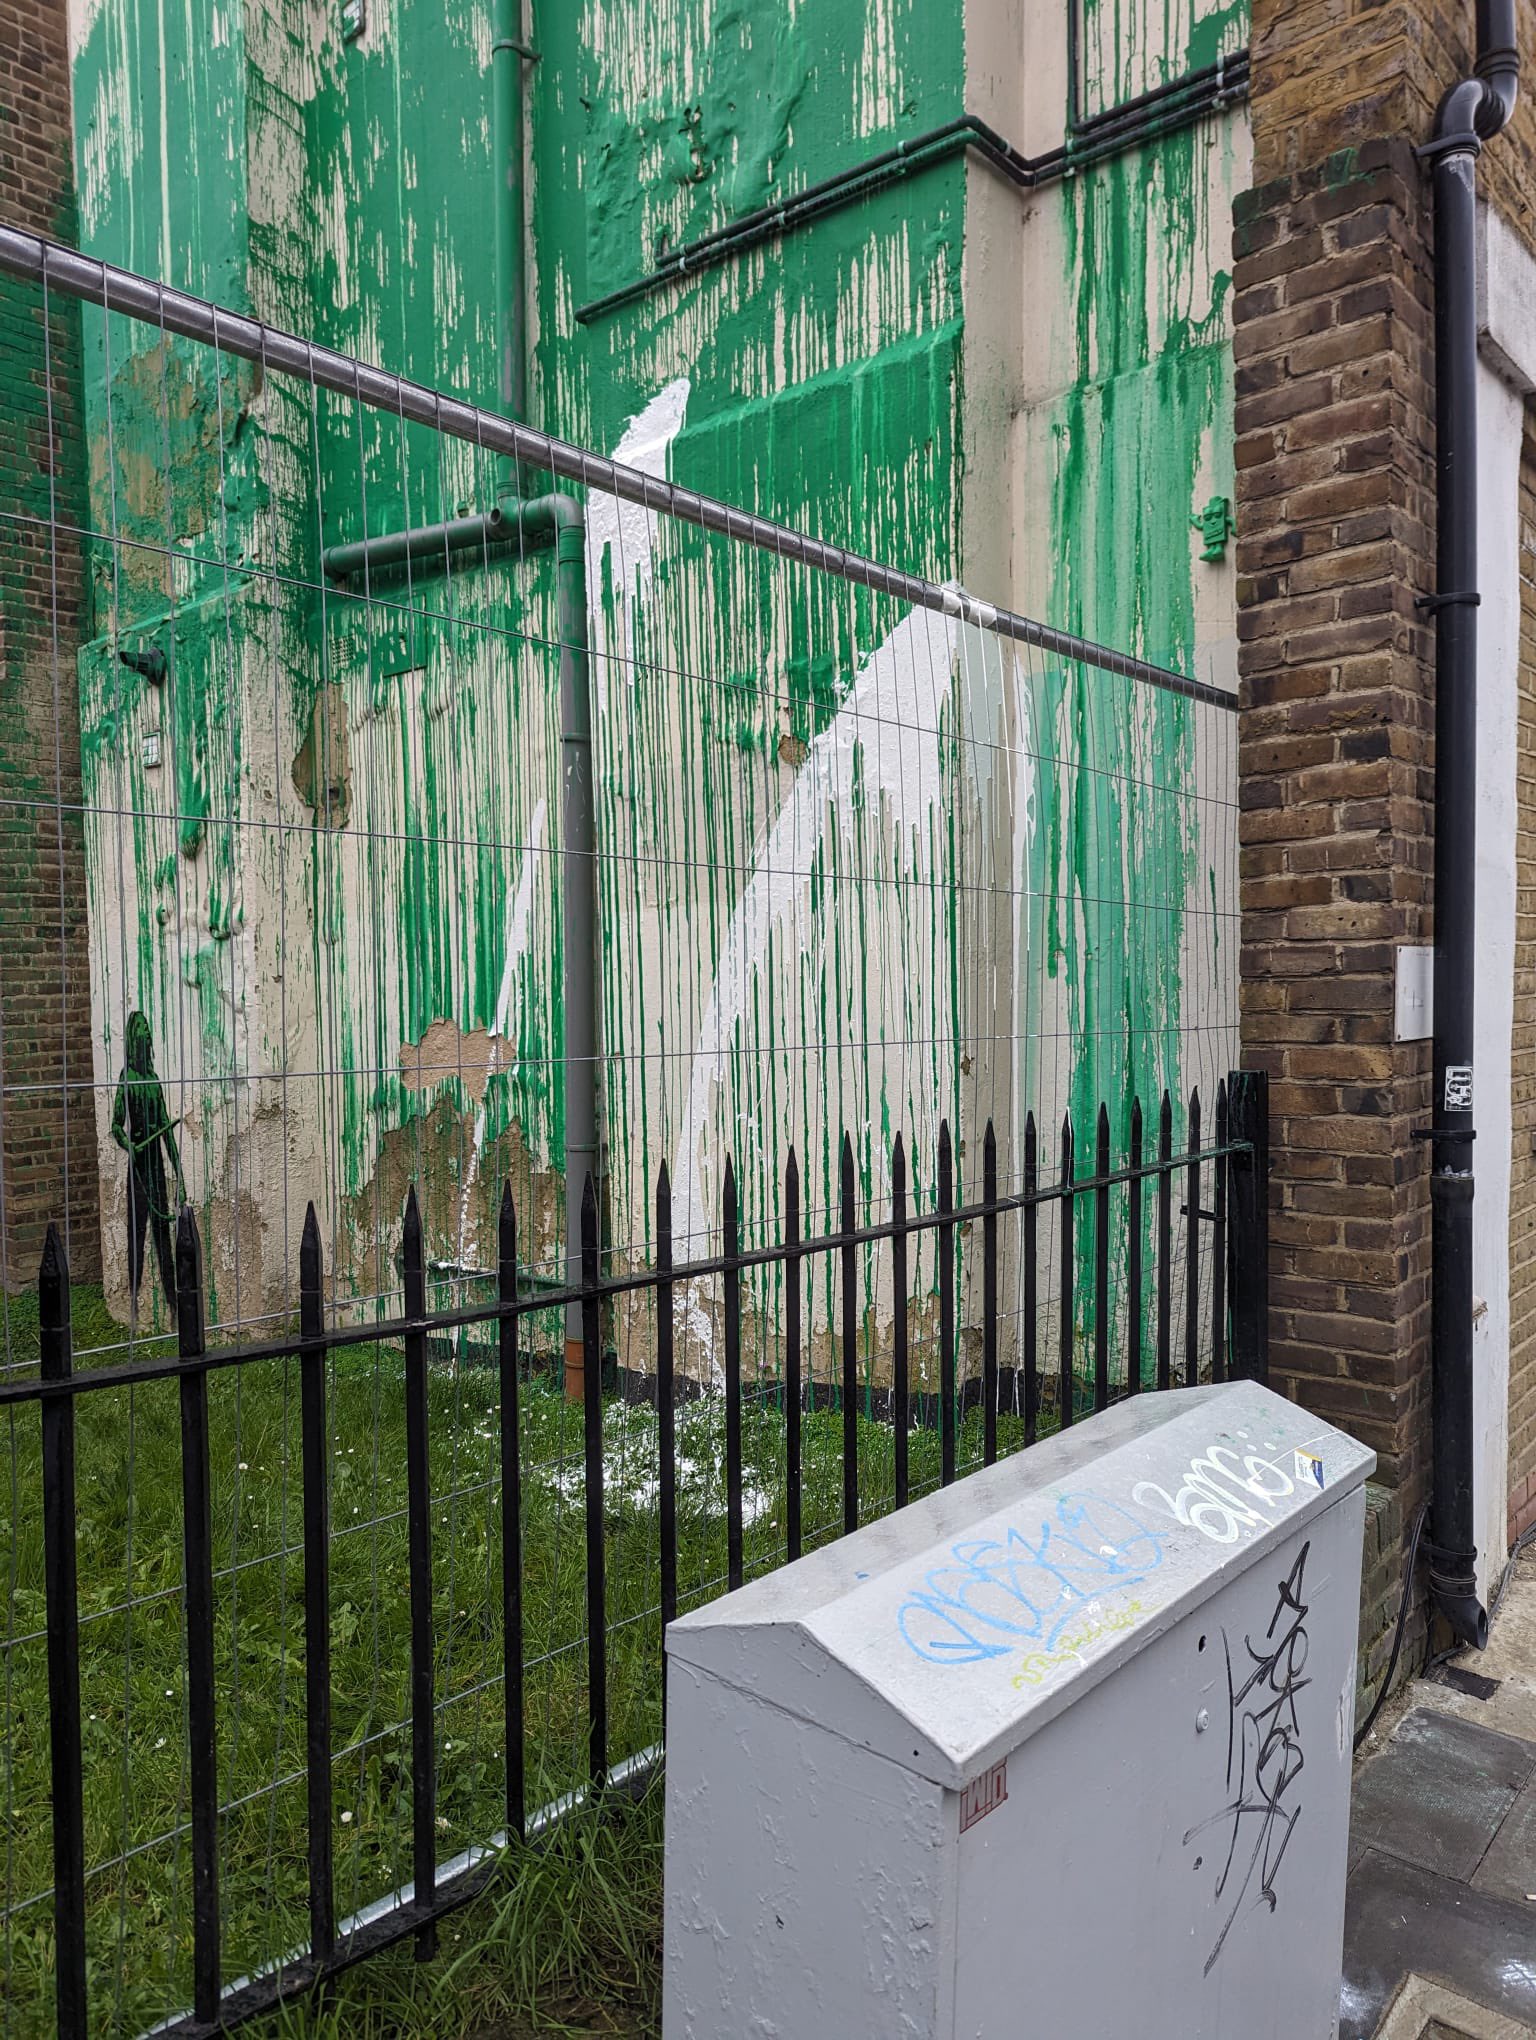 Νέος βανδαλισμός σε έργο του Banksy στο Λονδίνο. Μέτρα προστασίας λαμβάνει η τοπική κοινότητα